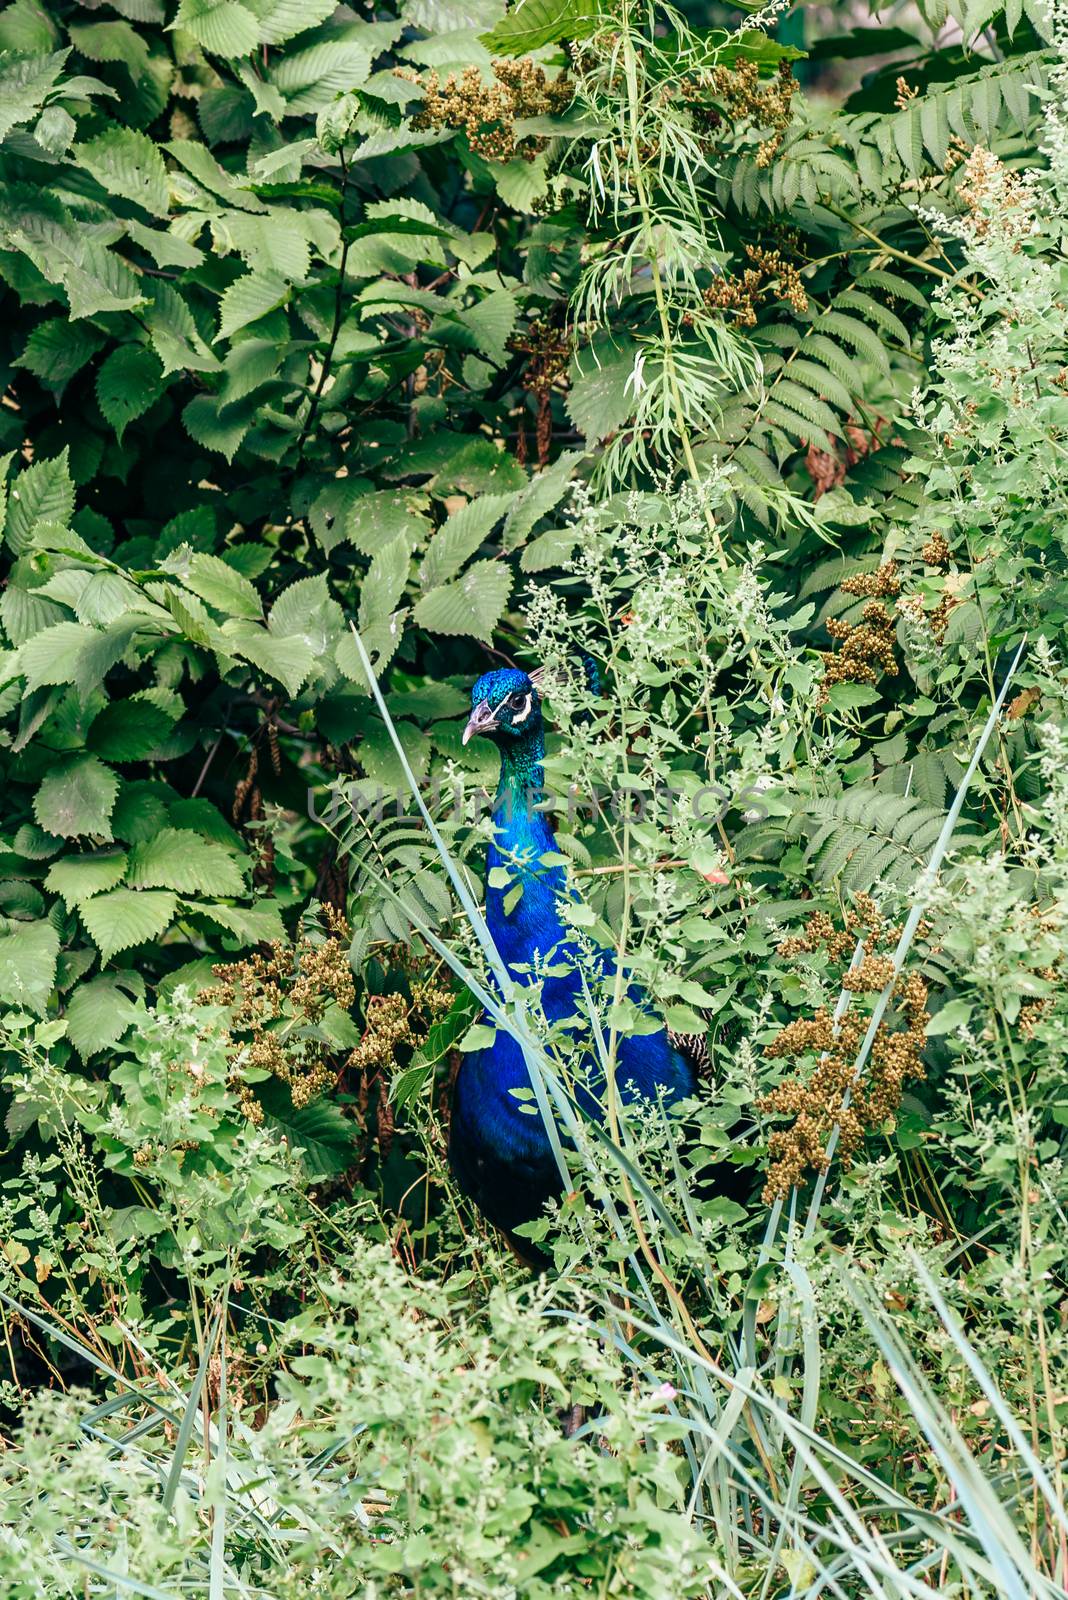 Male peacock in bush. by Seva_blsv